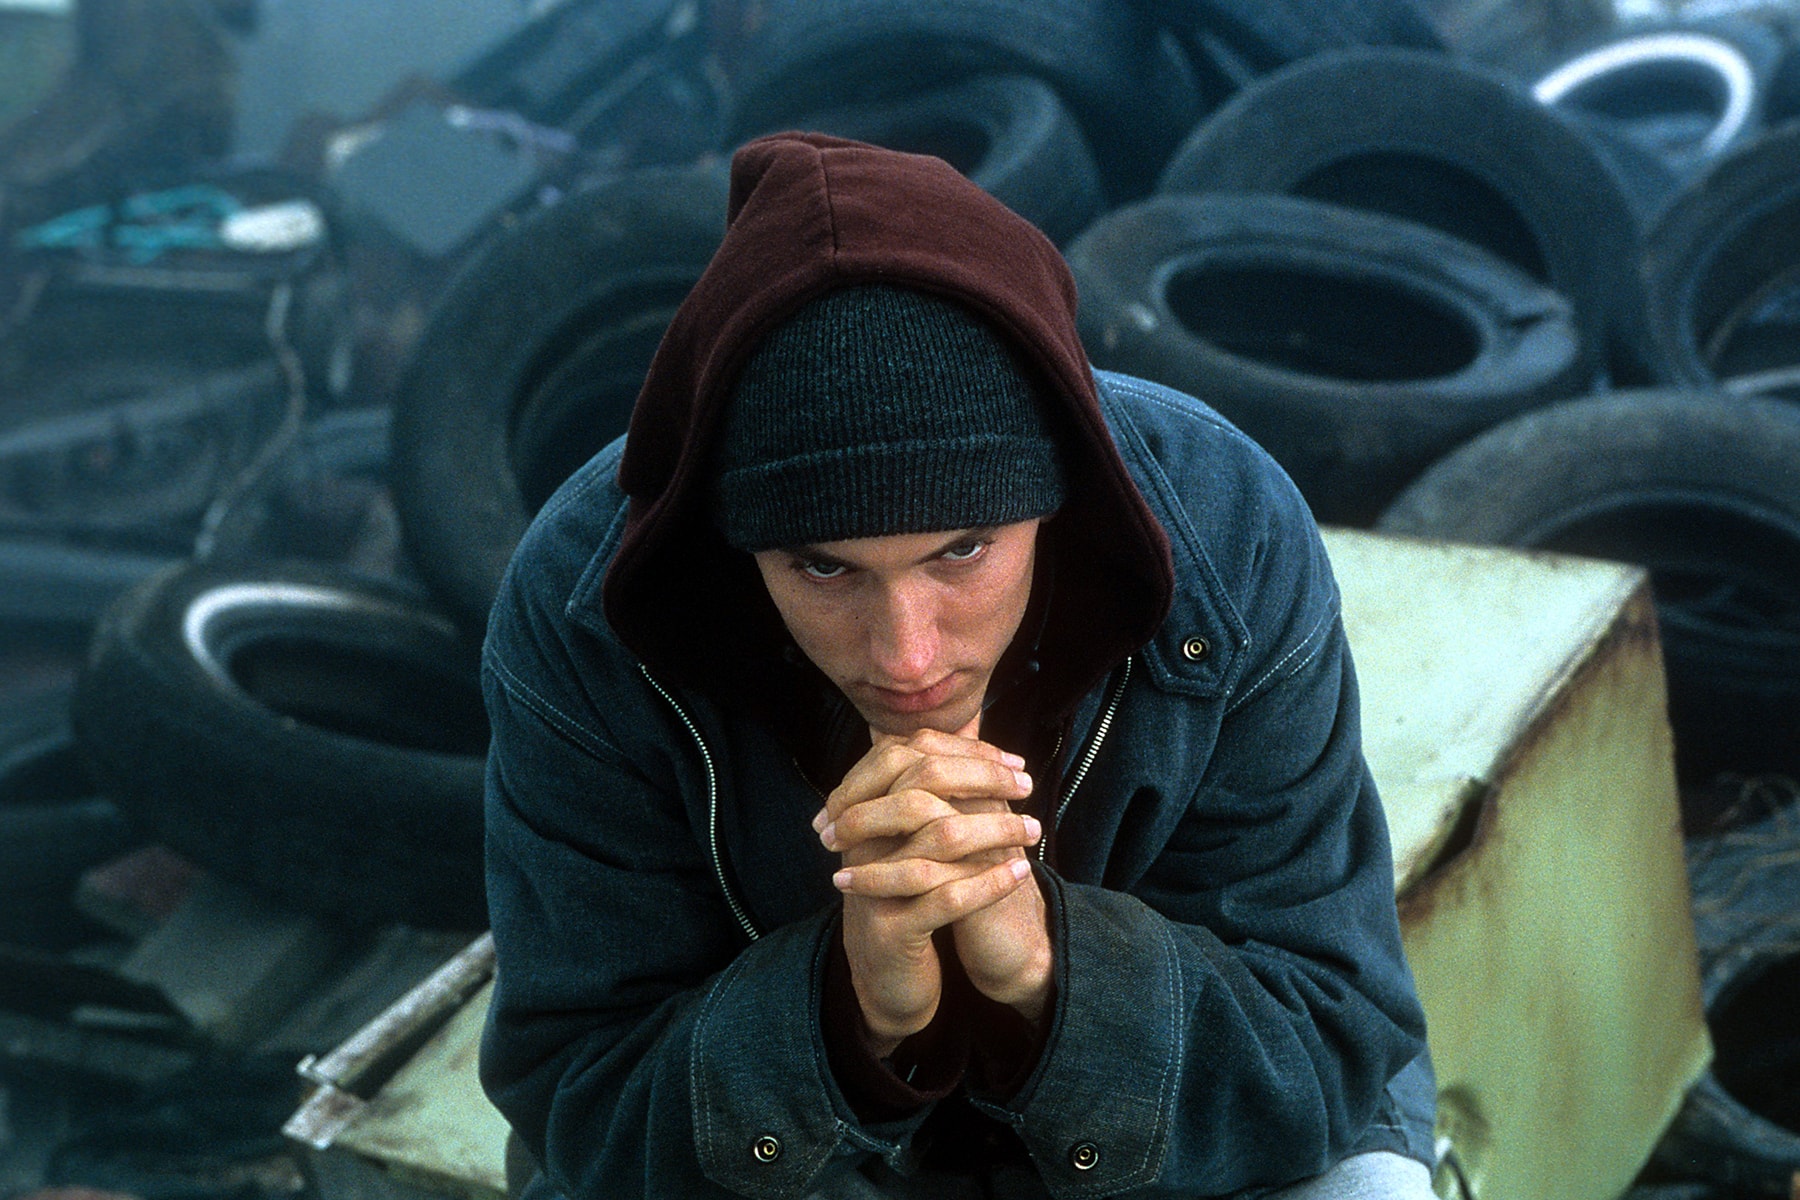 Eminem が『8 Mile』の15周年を記念して Carhartt とコラボレーション デトロイトを舞台とするSlim Shadyの半自伝映画……是非“Lose Yourself”関連のアイテムも発売されてほしいところ エミネム エイトマイル コラボレーション カーハート